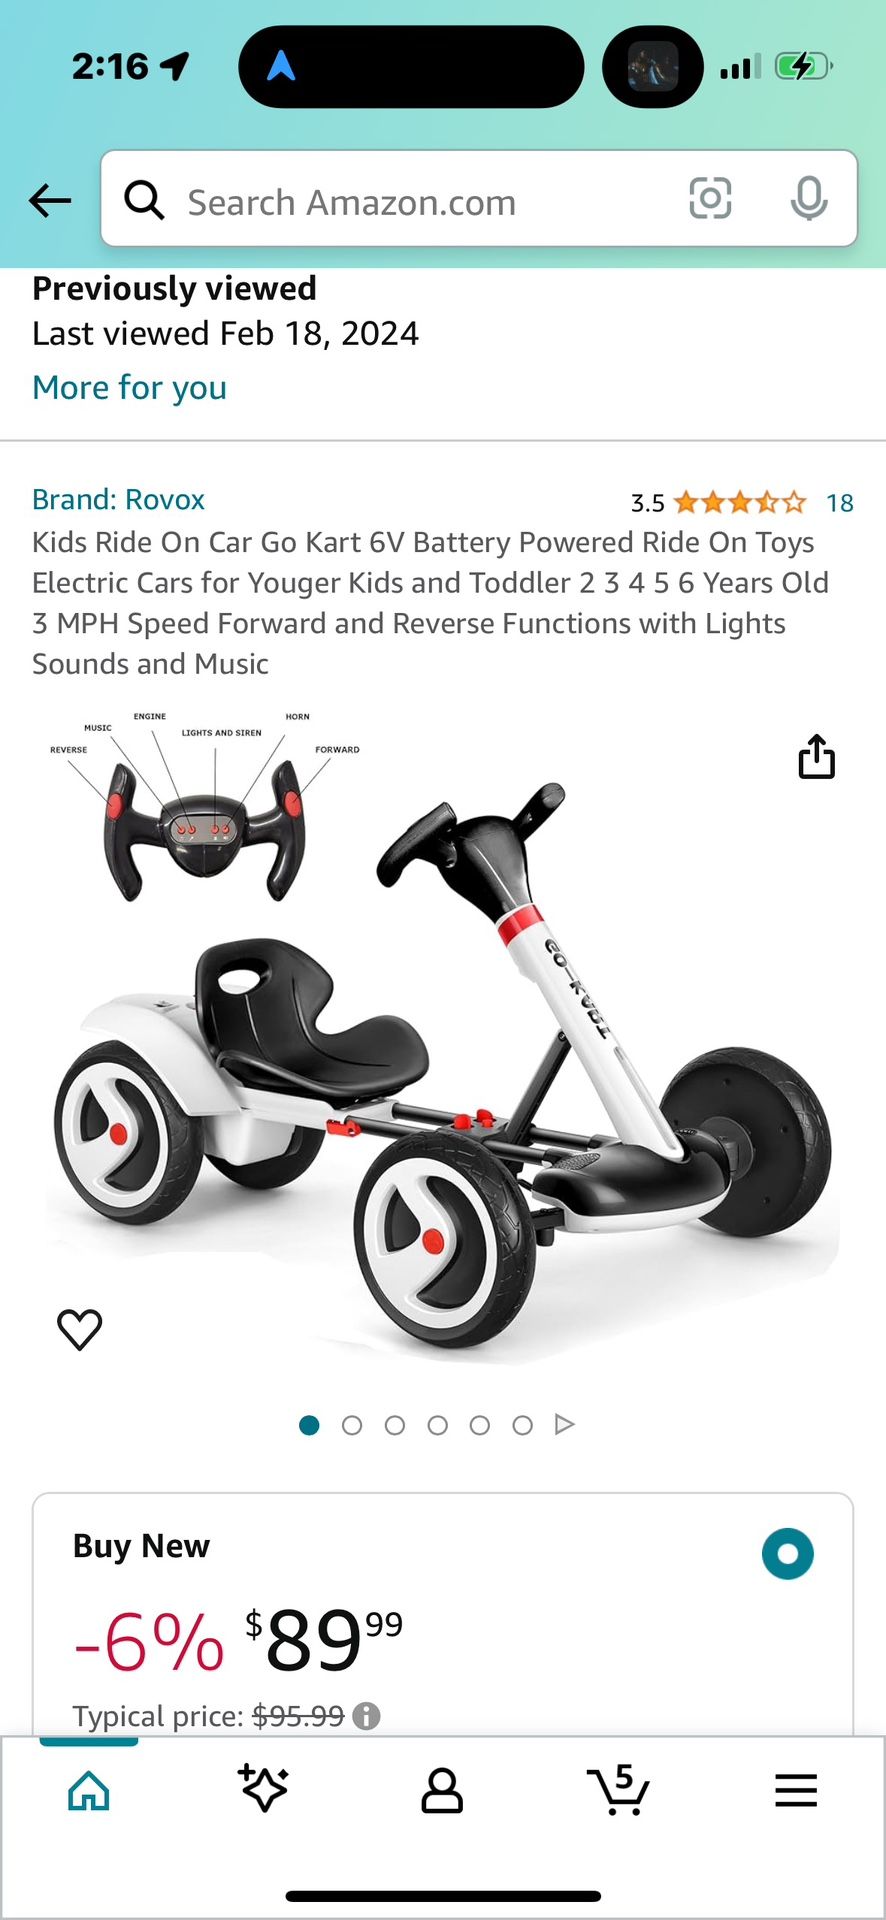 Kids Ride On Car Go Kart 6V Battery Powered Ride On Toys